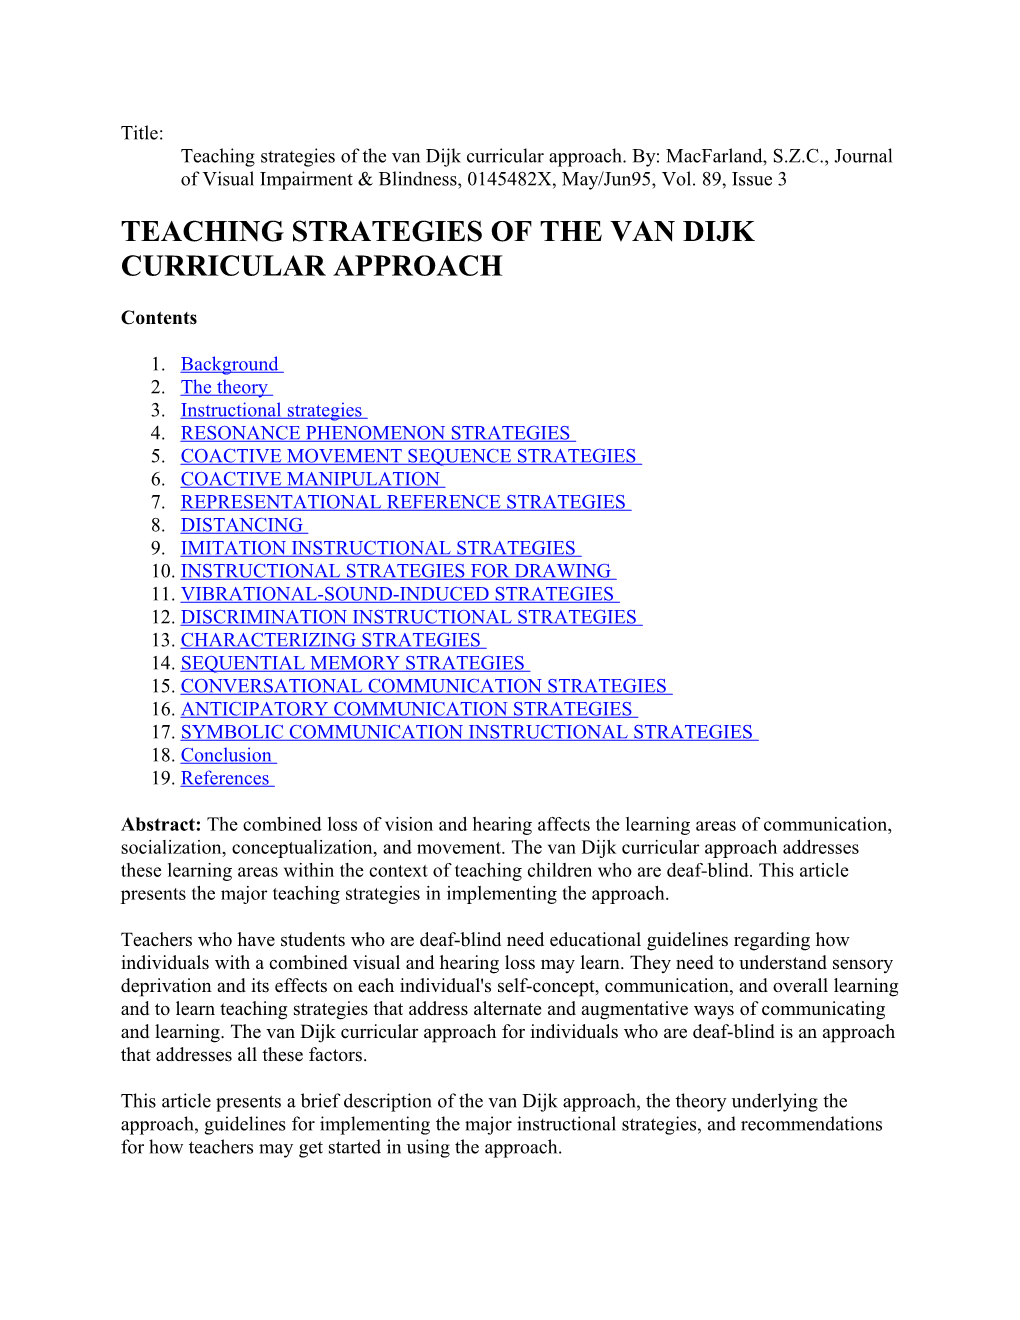 Teaching Strategies of the Van Dijk Curricular Approach